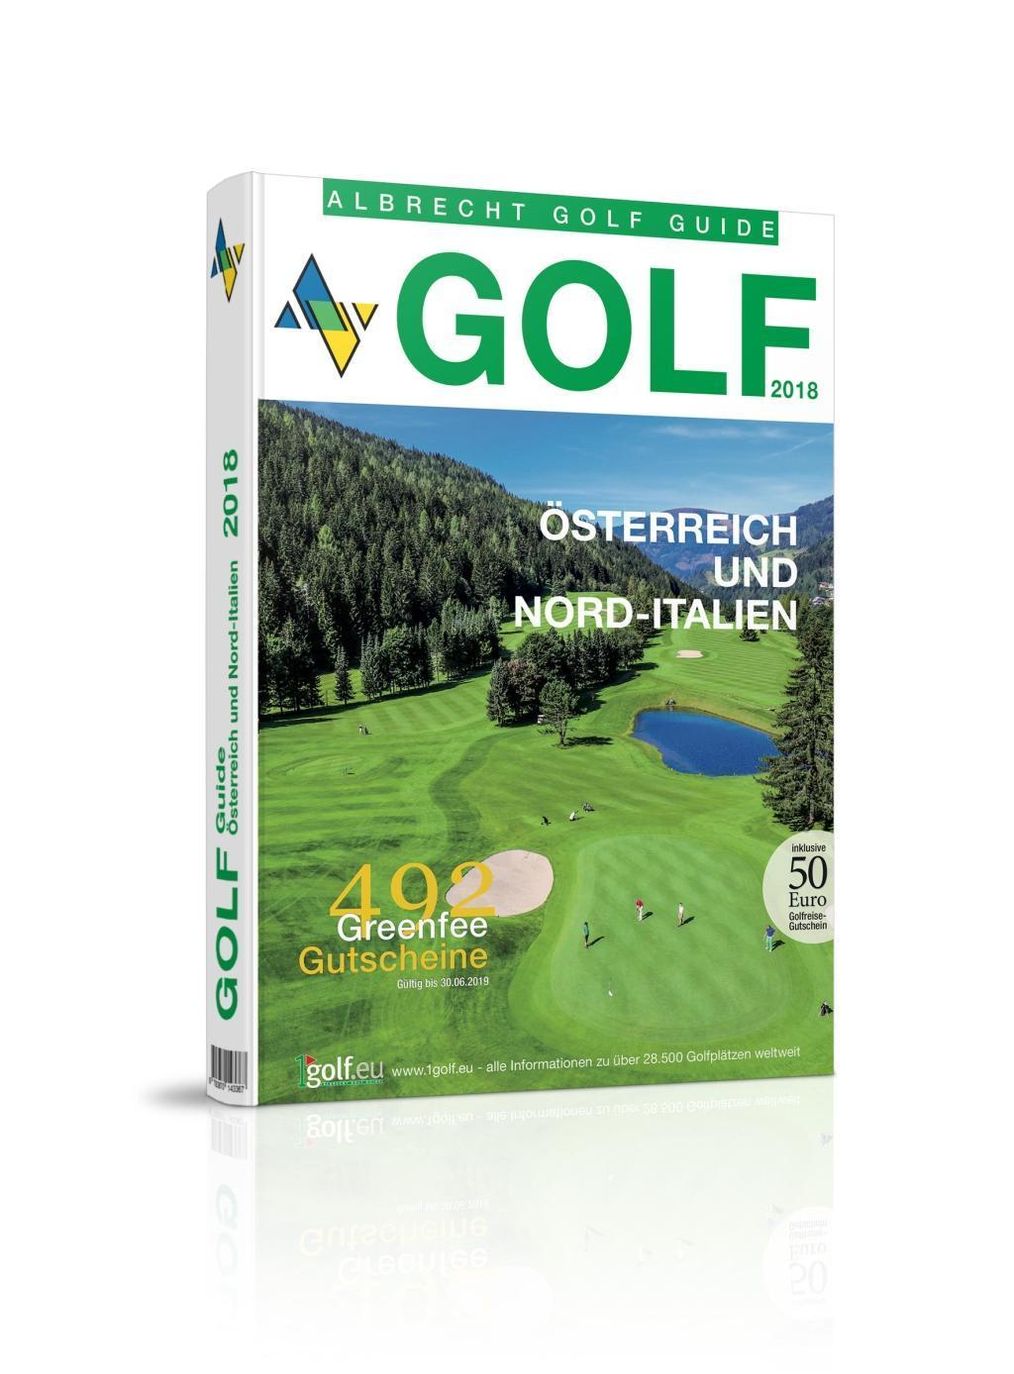 Albrecht Golf Guide Österreich und Nord-Italien 2018 inklusive  Gutscheinbuch | Weltbild.at